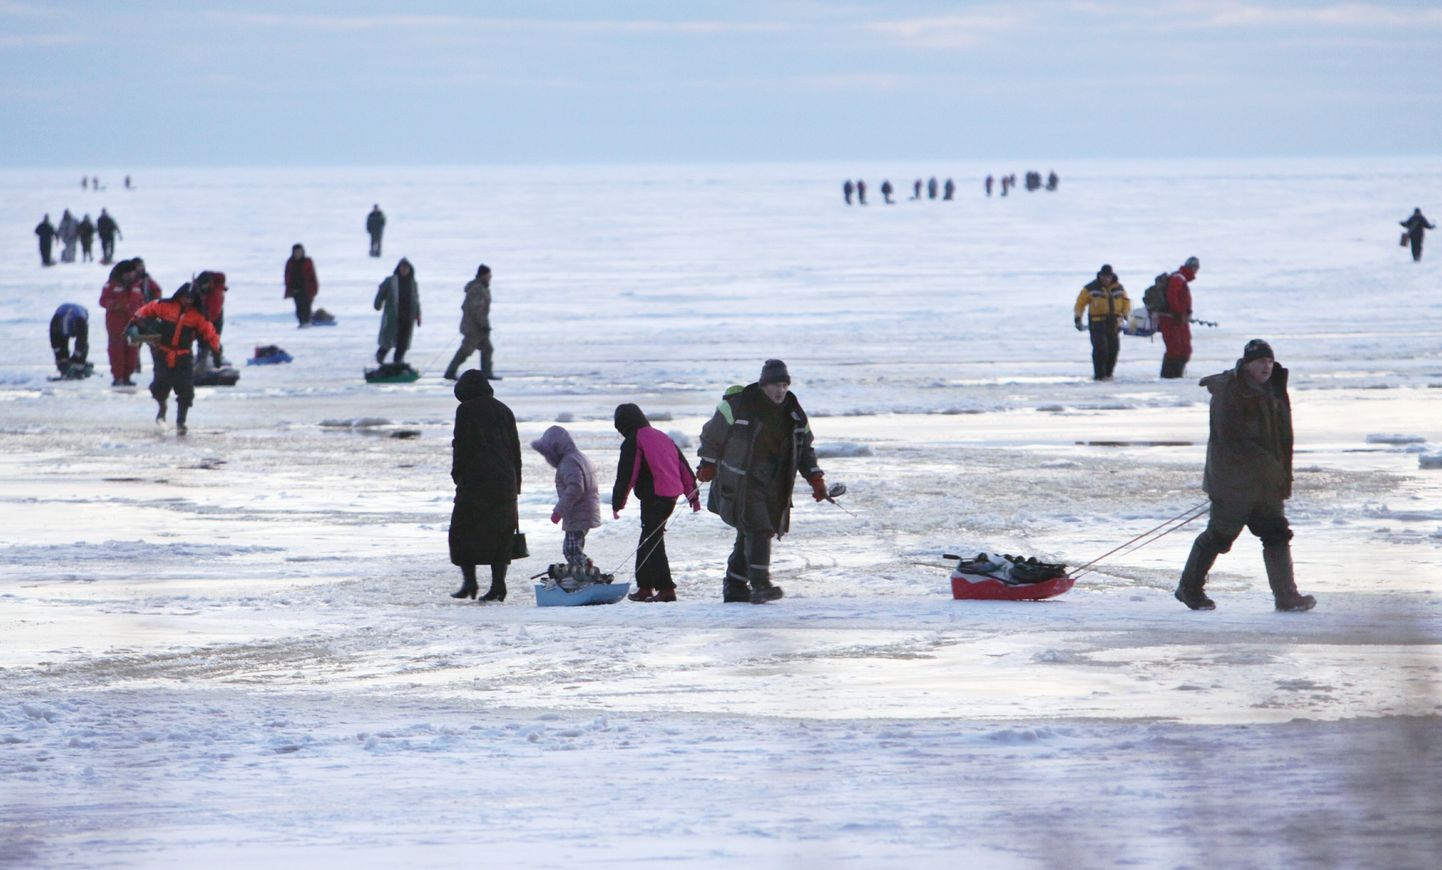 Keskkonnainspektsioon hakkab koos Läti kalakaitsjatega sel talvel Pärnu lahel kalastajaid kontrollima. Foto on illustreeriv.